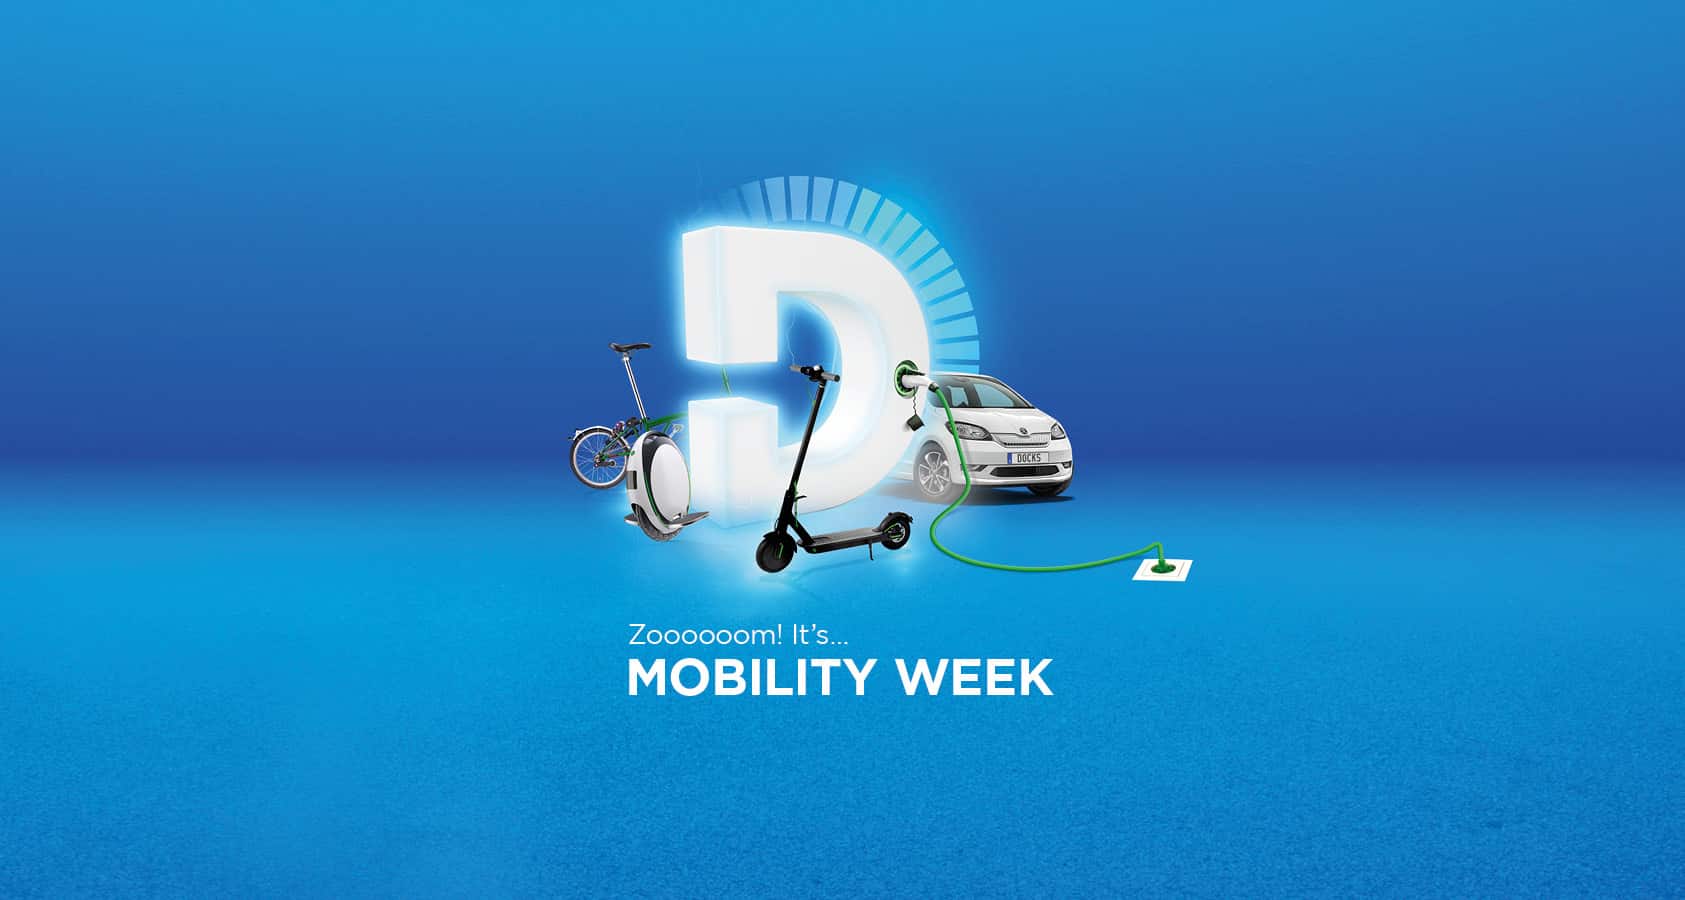 J13060 Mobility Week 2021 website 1685x900 v1 AW